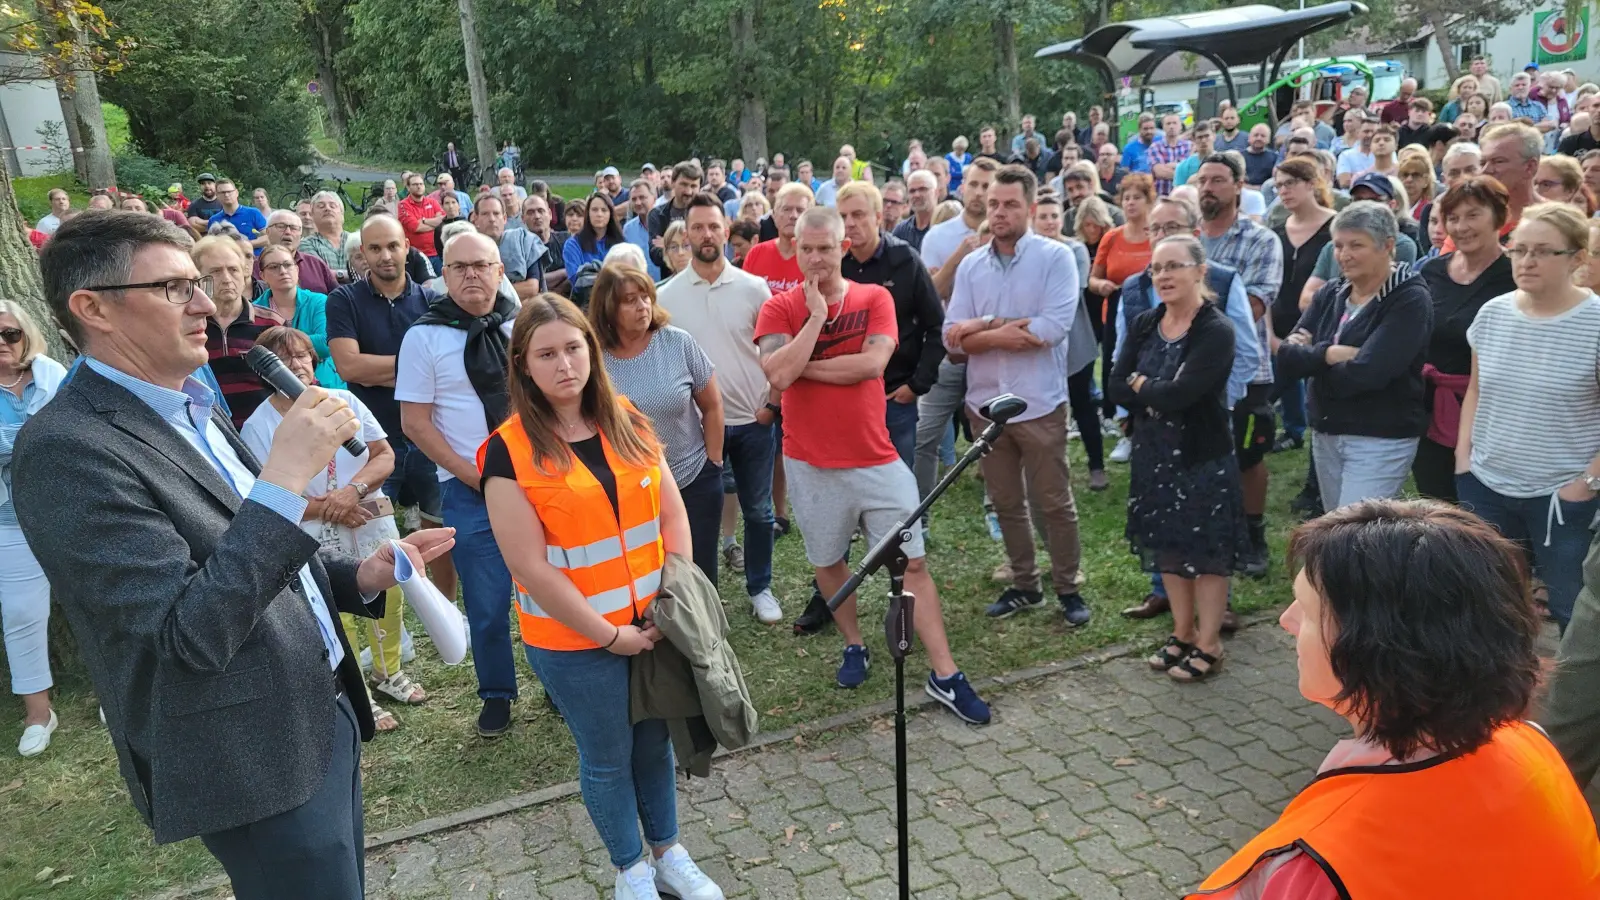 Bürgermeister Jürgen Meyer (links) forderte die rund 450 Besucher der Veranstaltung auf, einen respektvollen Umgang miteinander zu pflegen und sachlich zu diskutieren. Erfolgreich. (Foto: Nina Daebel)